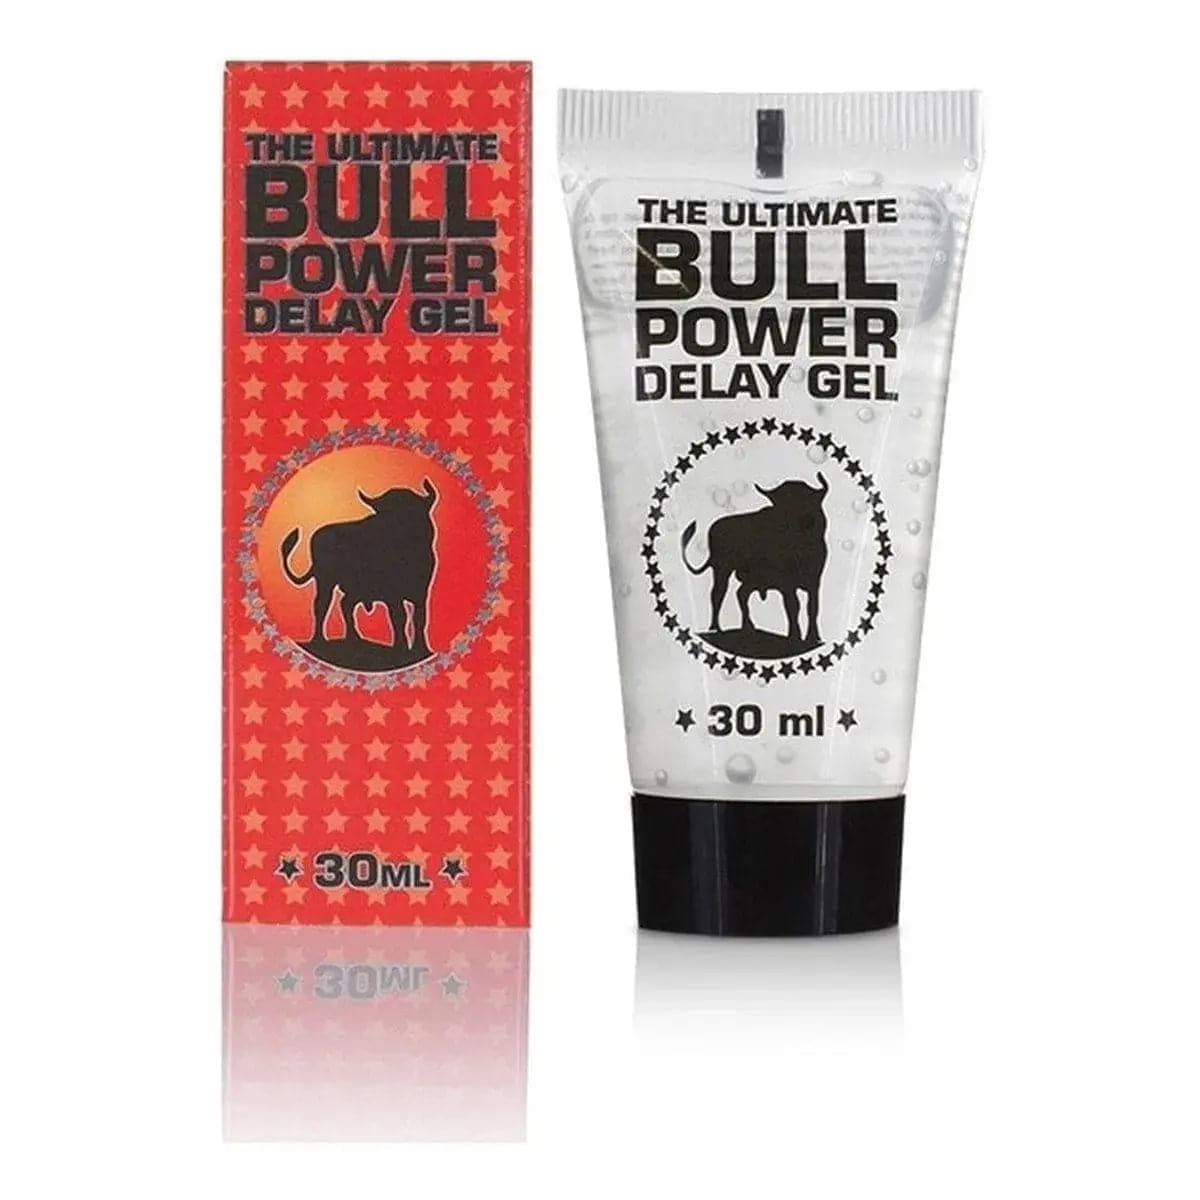 Gel Retardante Bull Power 30ml - Prevenir Ejaculação Precoce